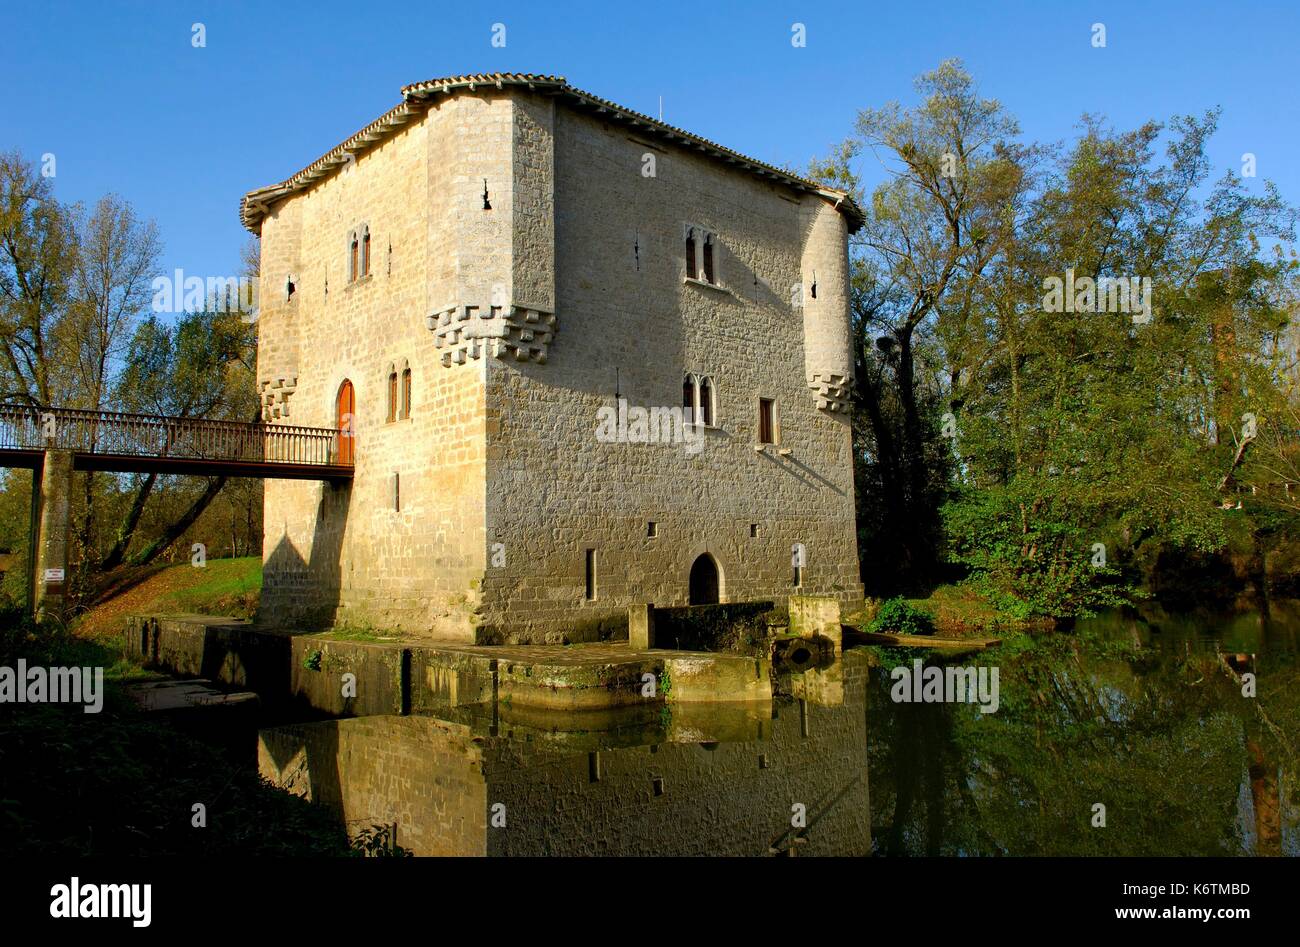 France, Gironde, Bagas, Moulin de Bagas (mill) Stock Photo